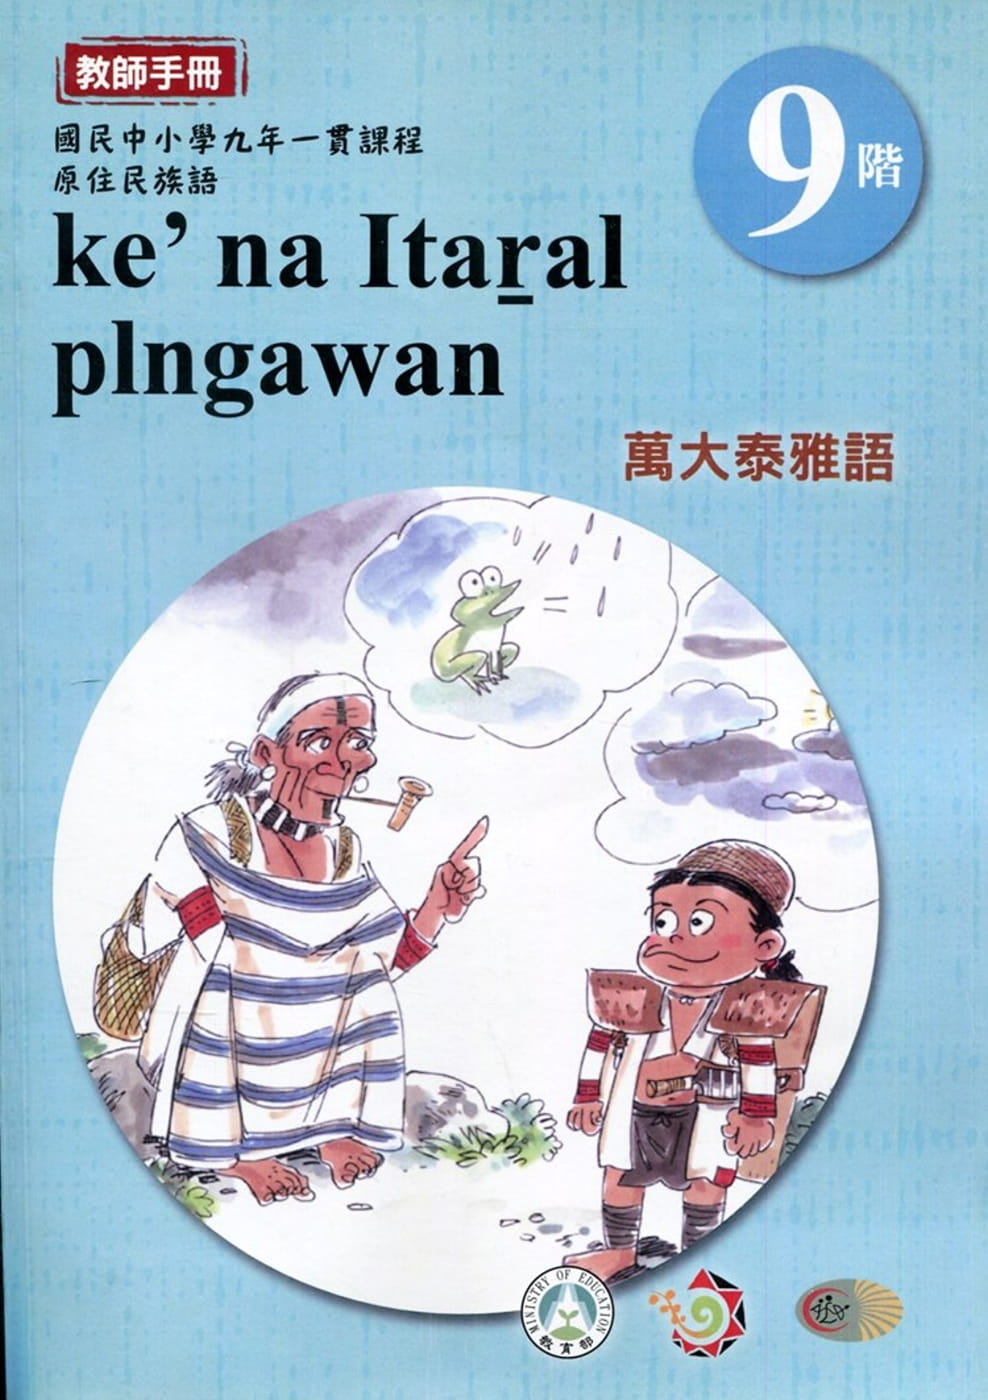 原住民族語萬大泰雅語第九階教師手冊2版